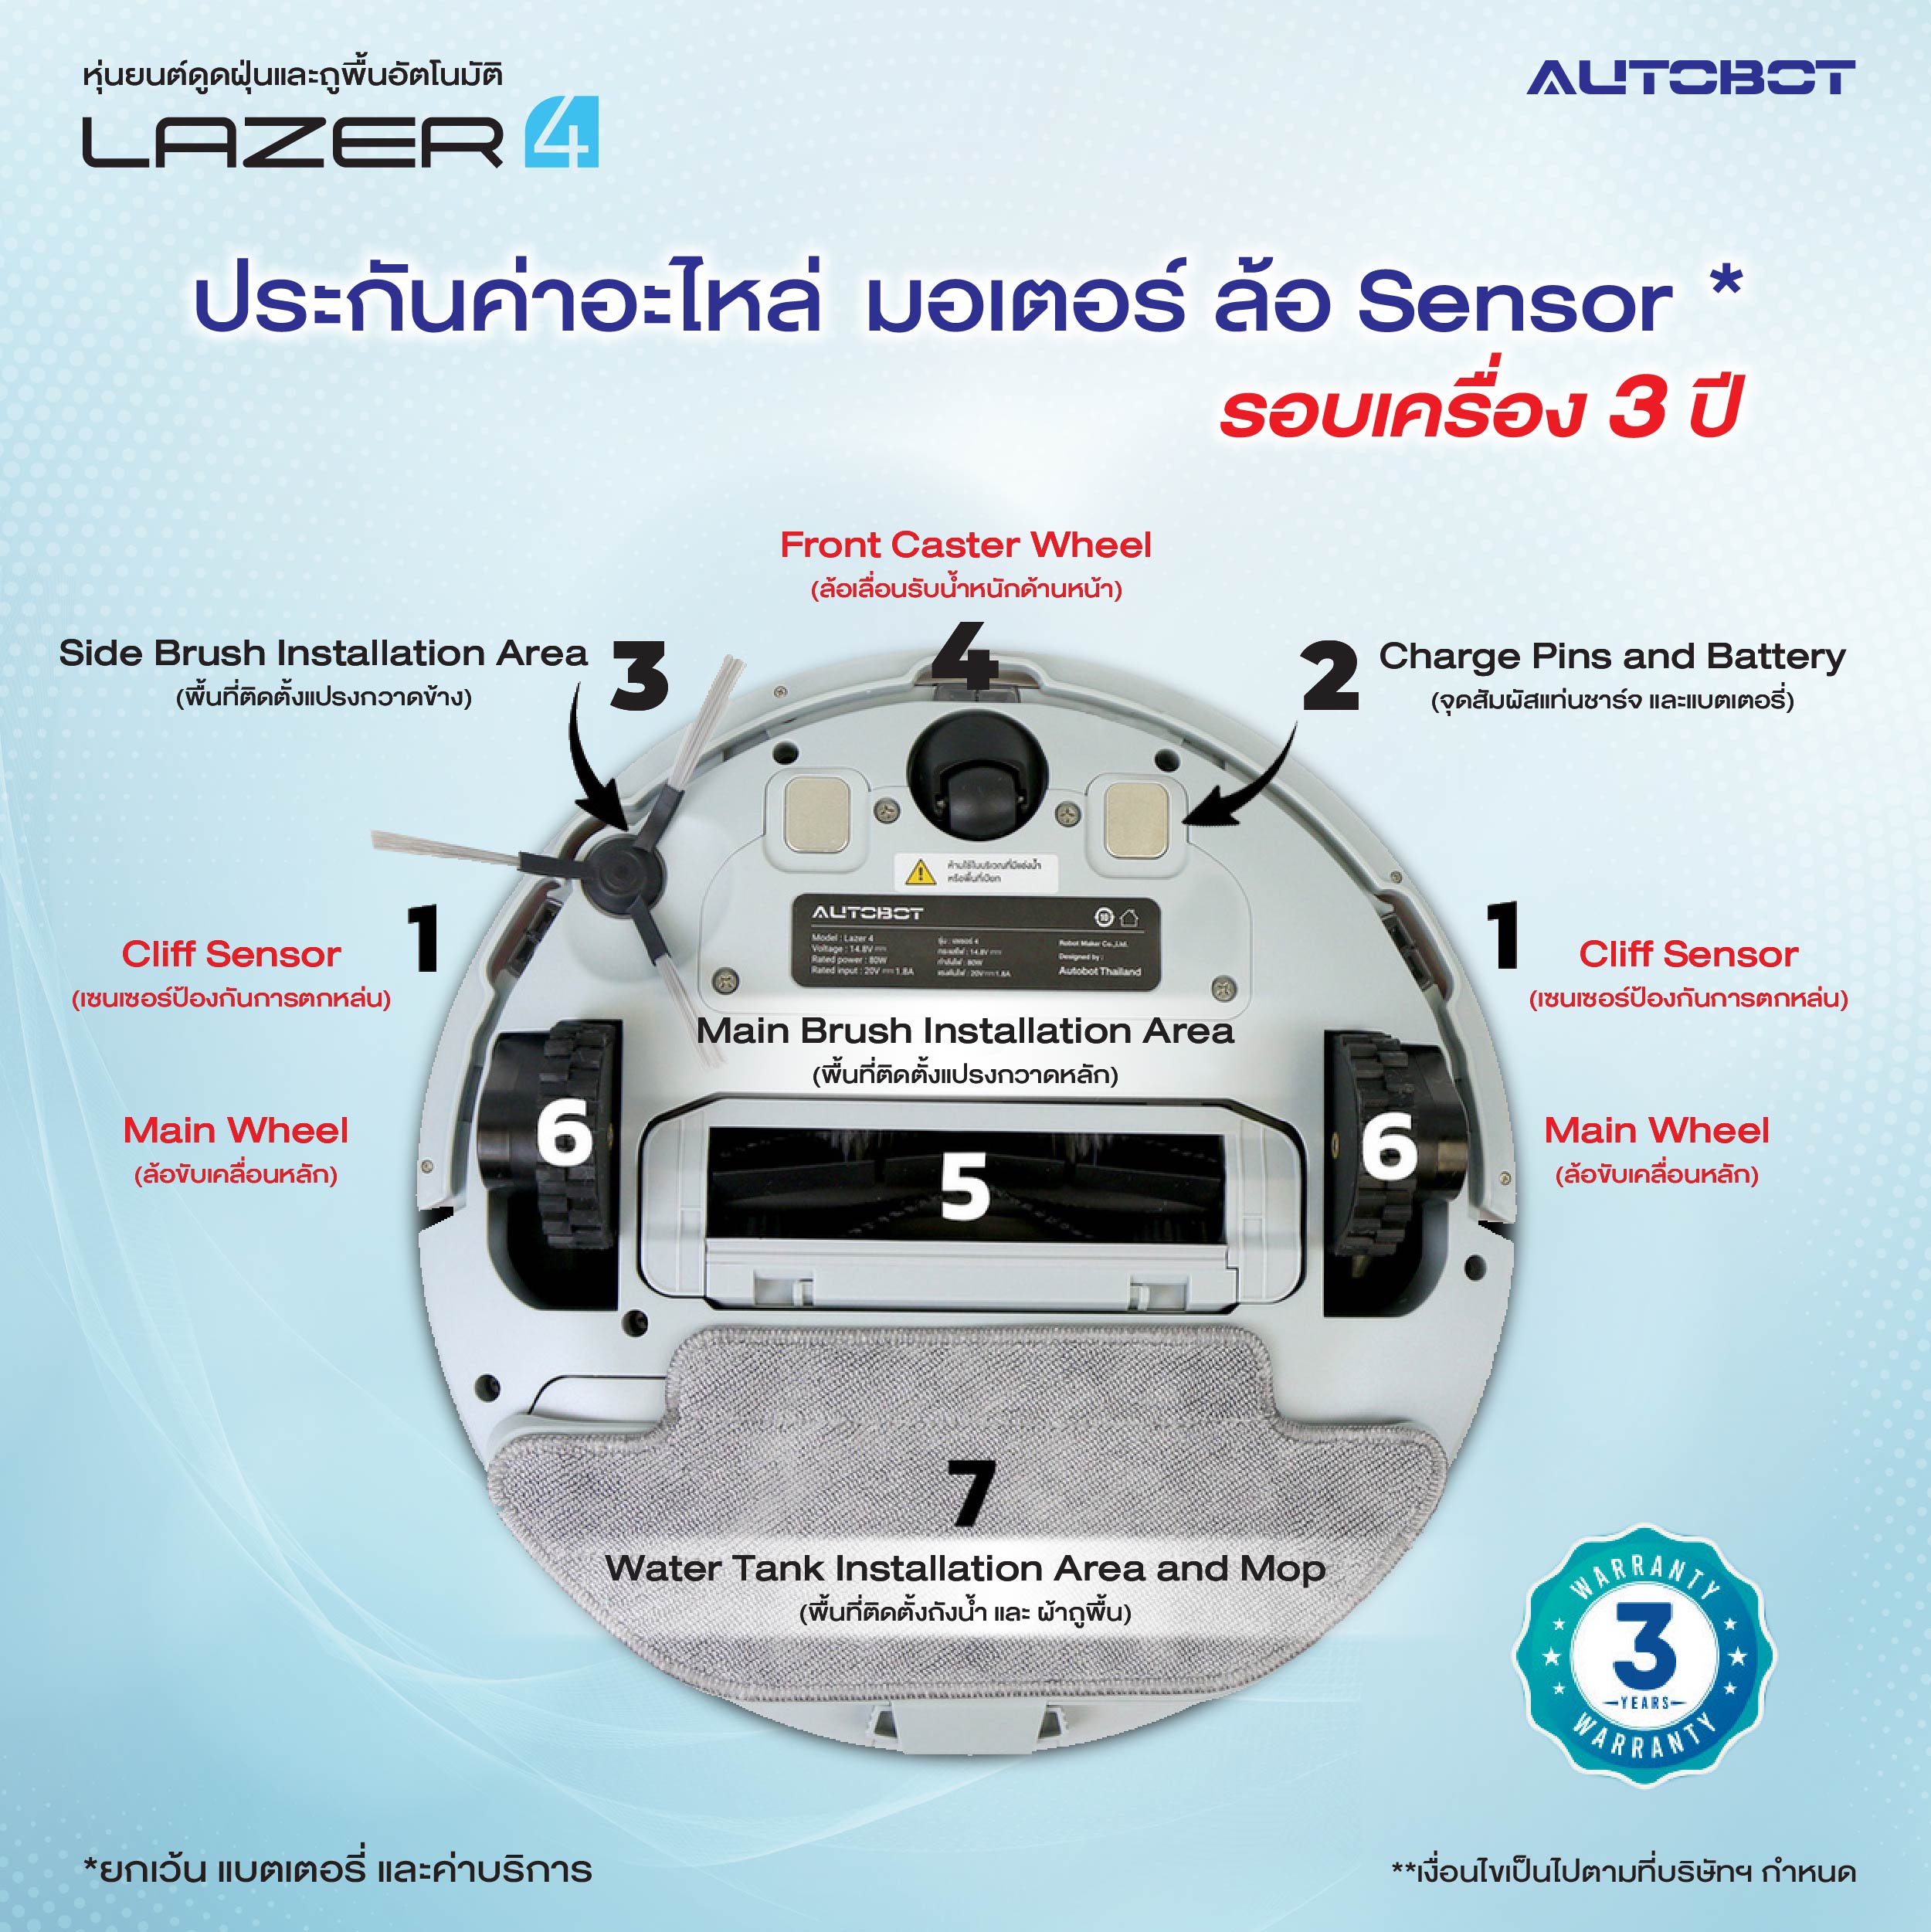 ข้อมูลเกี่ยวกับ AUTOBOT Lazer Mark 4 หุ่นยนต์ดูดฝุ่น ระบบ Laser Hybrid Mapping Robot Vacuum Cleaner